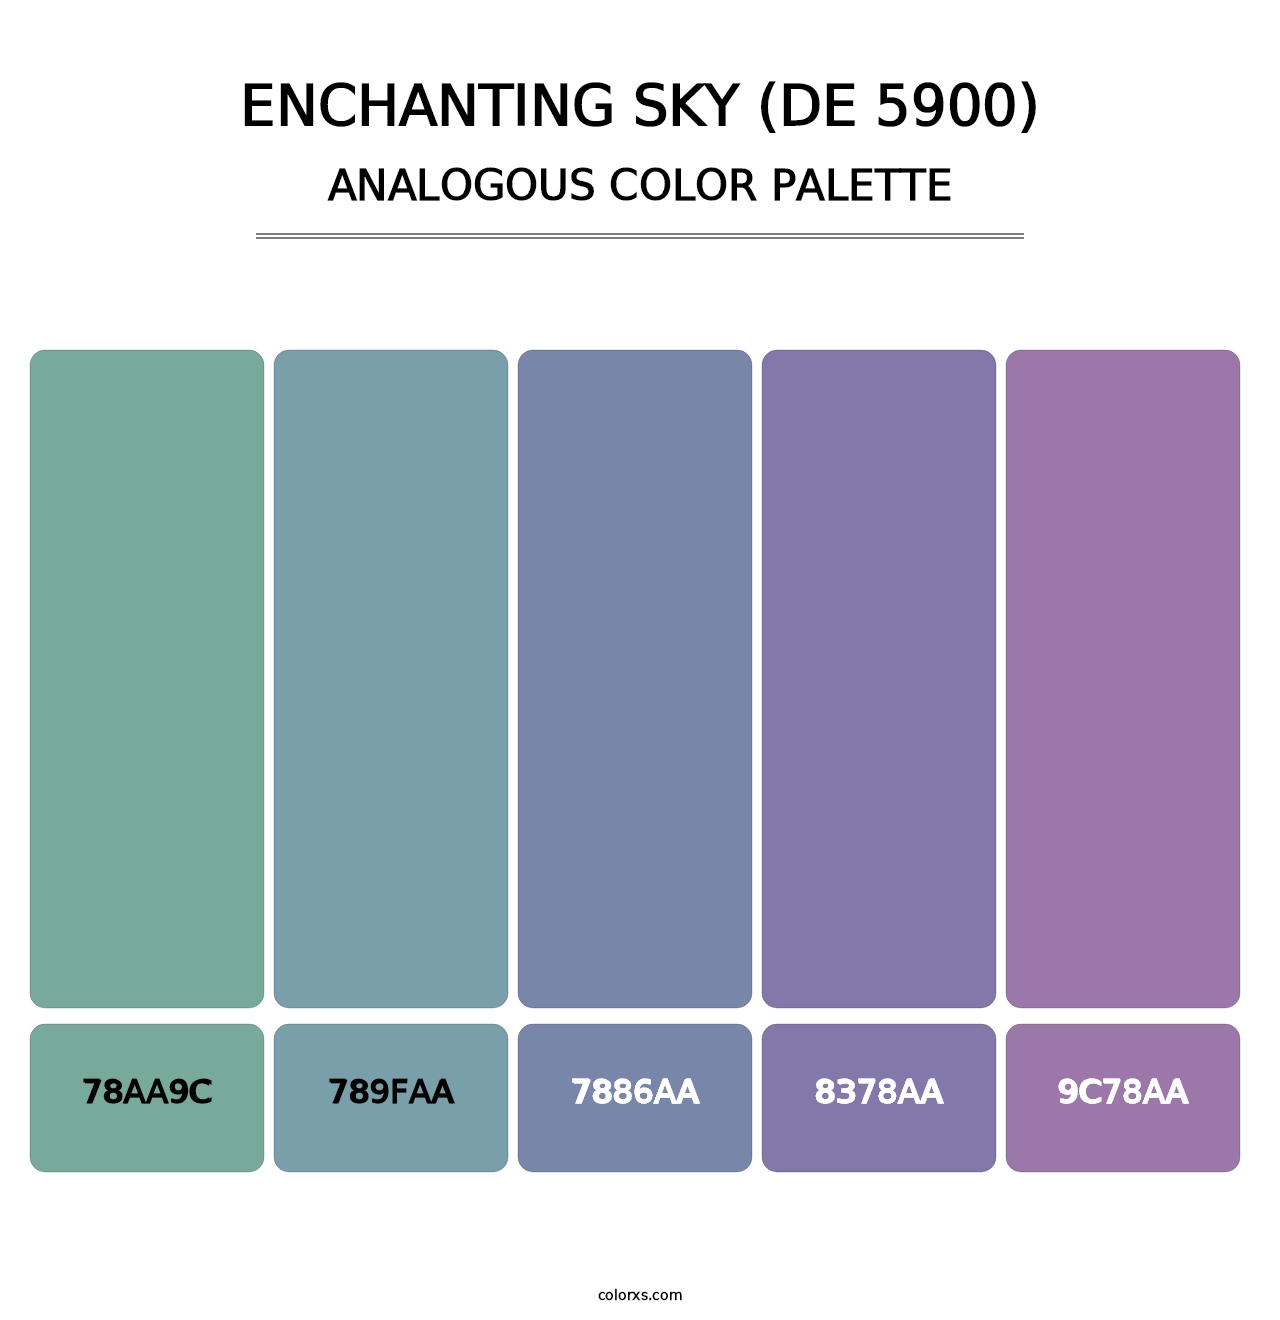 Enchanting Sky (DE 5900) - Analogous Color Palette